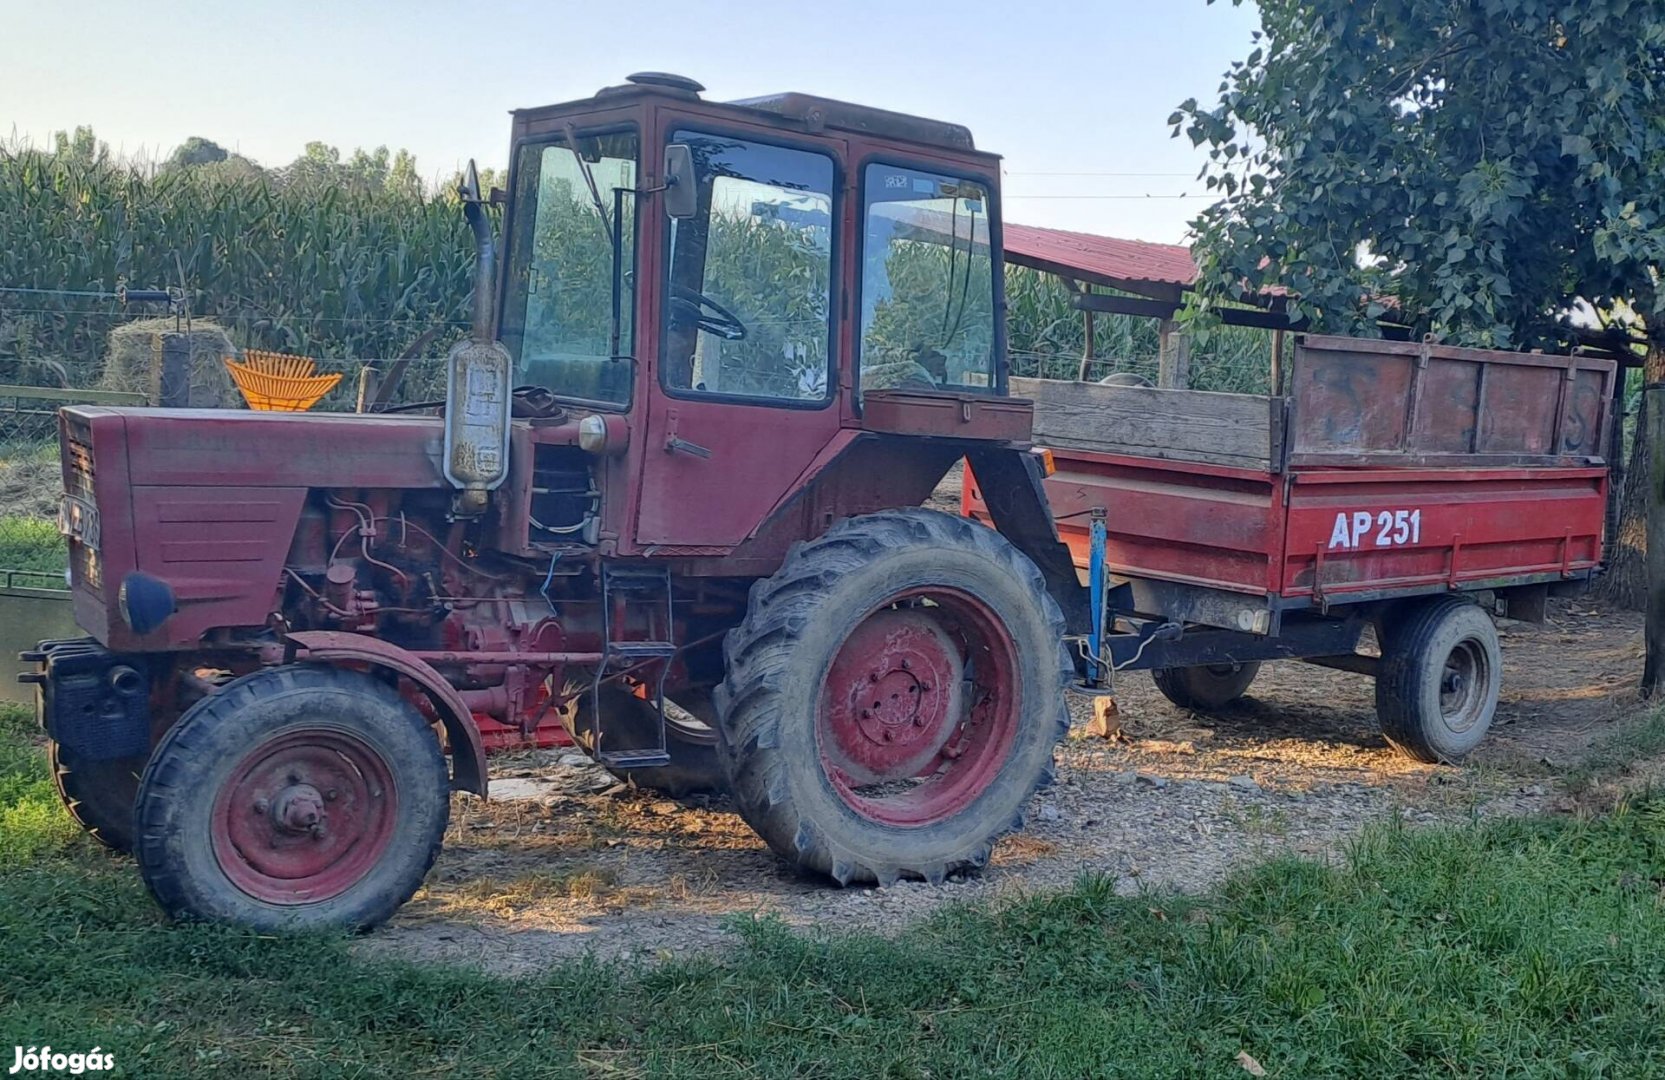 Eladó T25 traktor jó állapotban. 